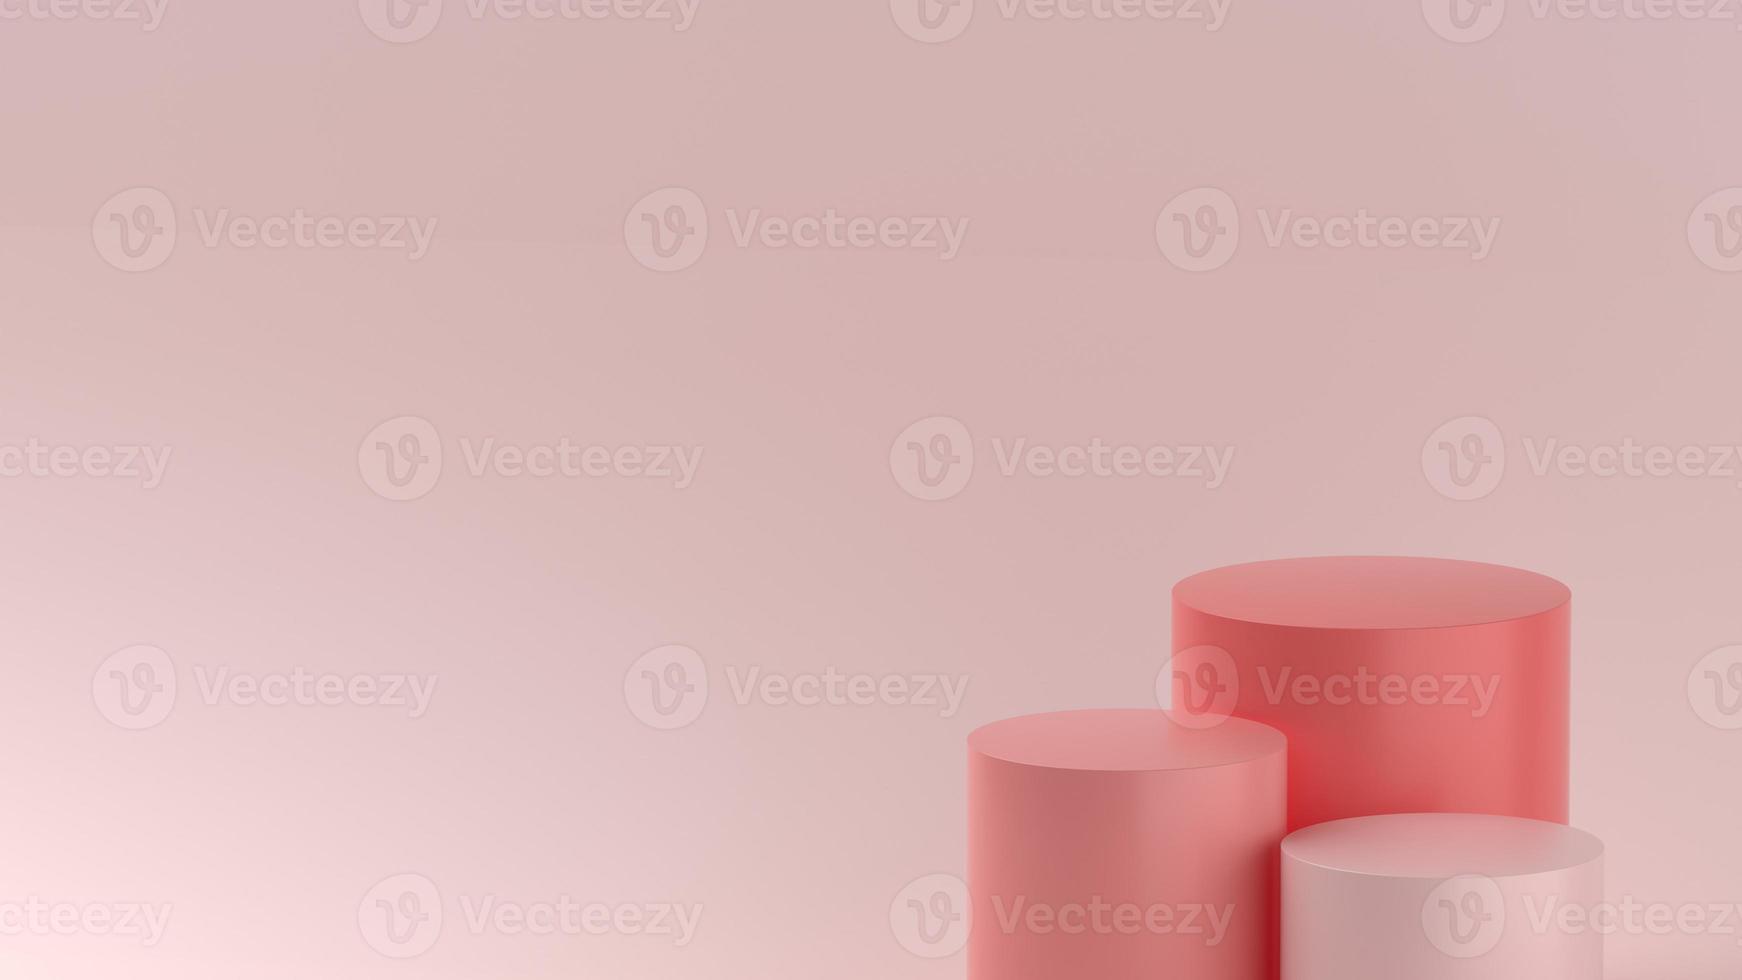 escenario de producto de tonos rosa minimalista para escaparate o promoción de producto foto